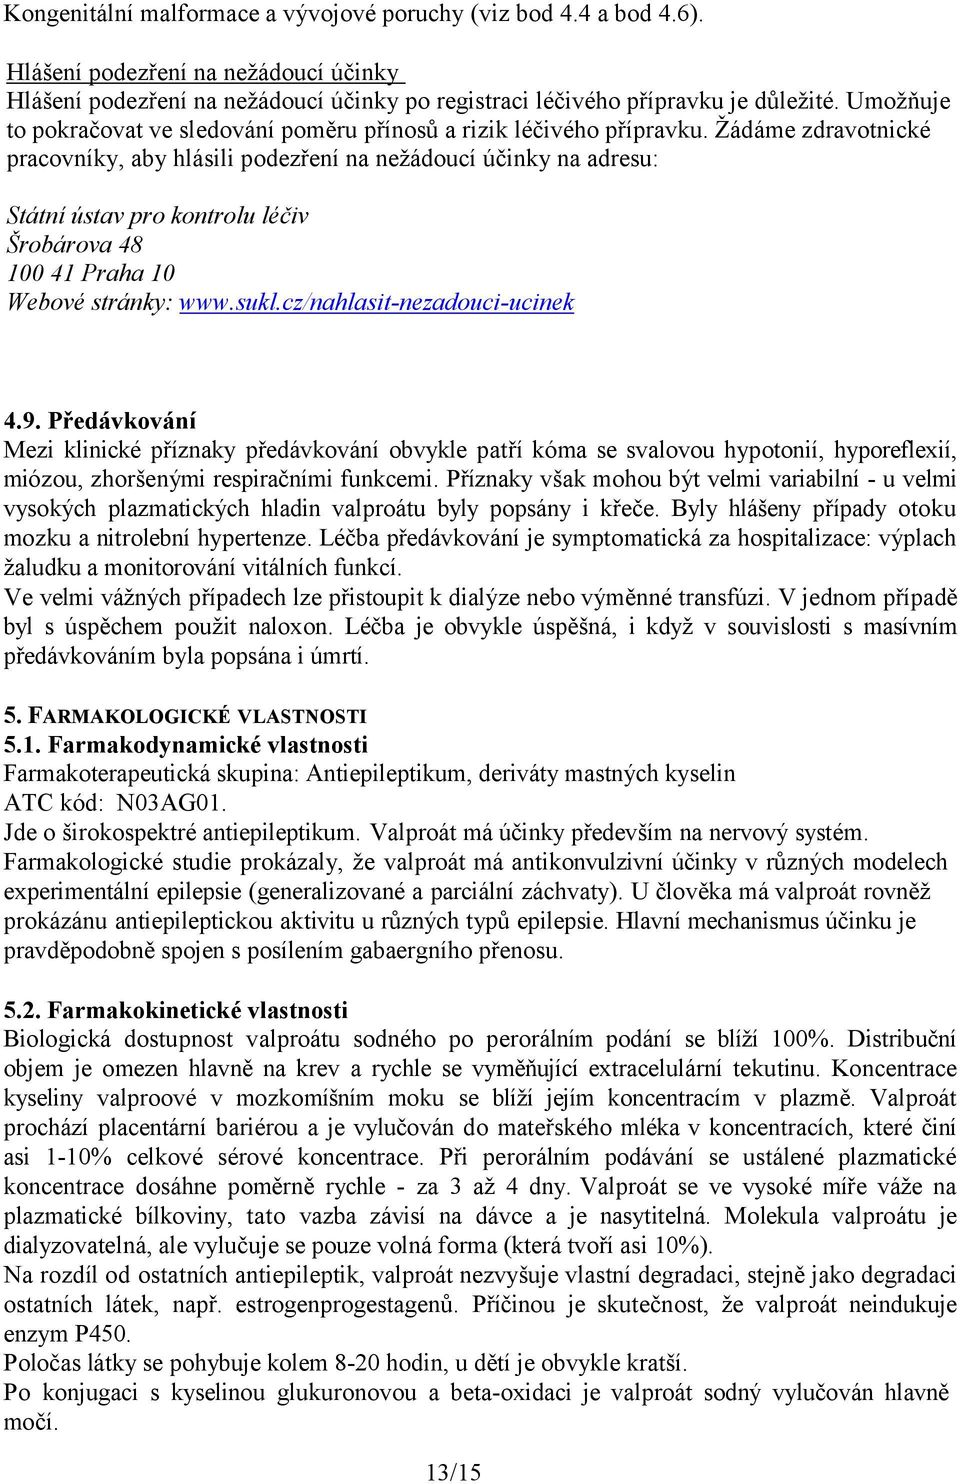 Žádáme zdravotnické pracovníky, aby hlásili podezření na nežádoucí účinky na adresu: Státní ústav pro kontrolu léčiv Šrobárova 48 100 41 Praha 10 Webové stránky: www.sukl.